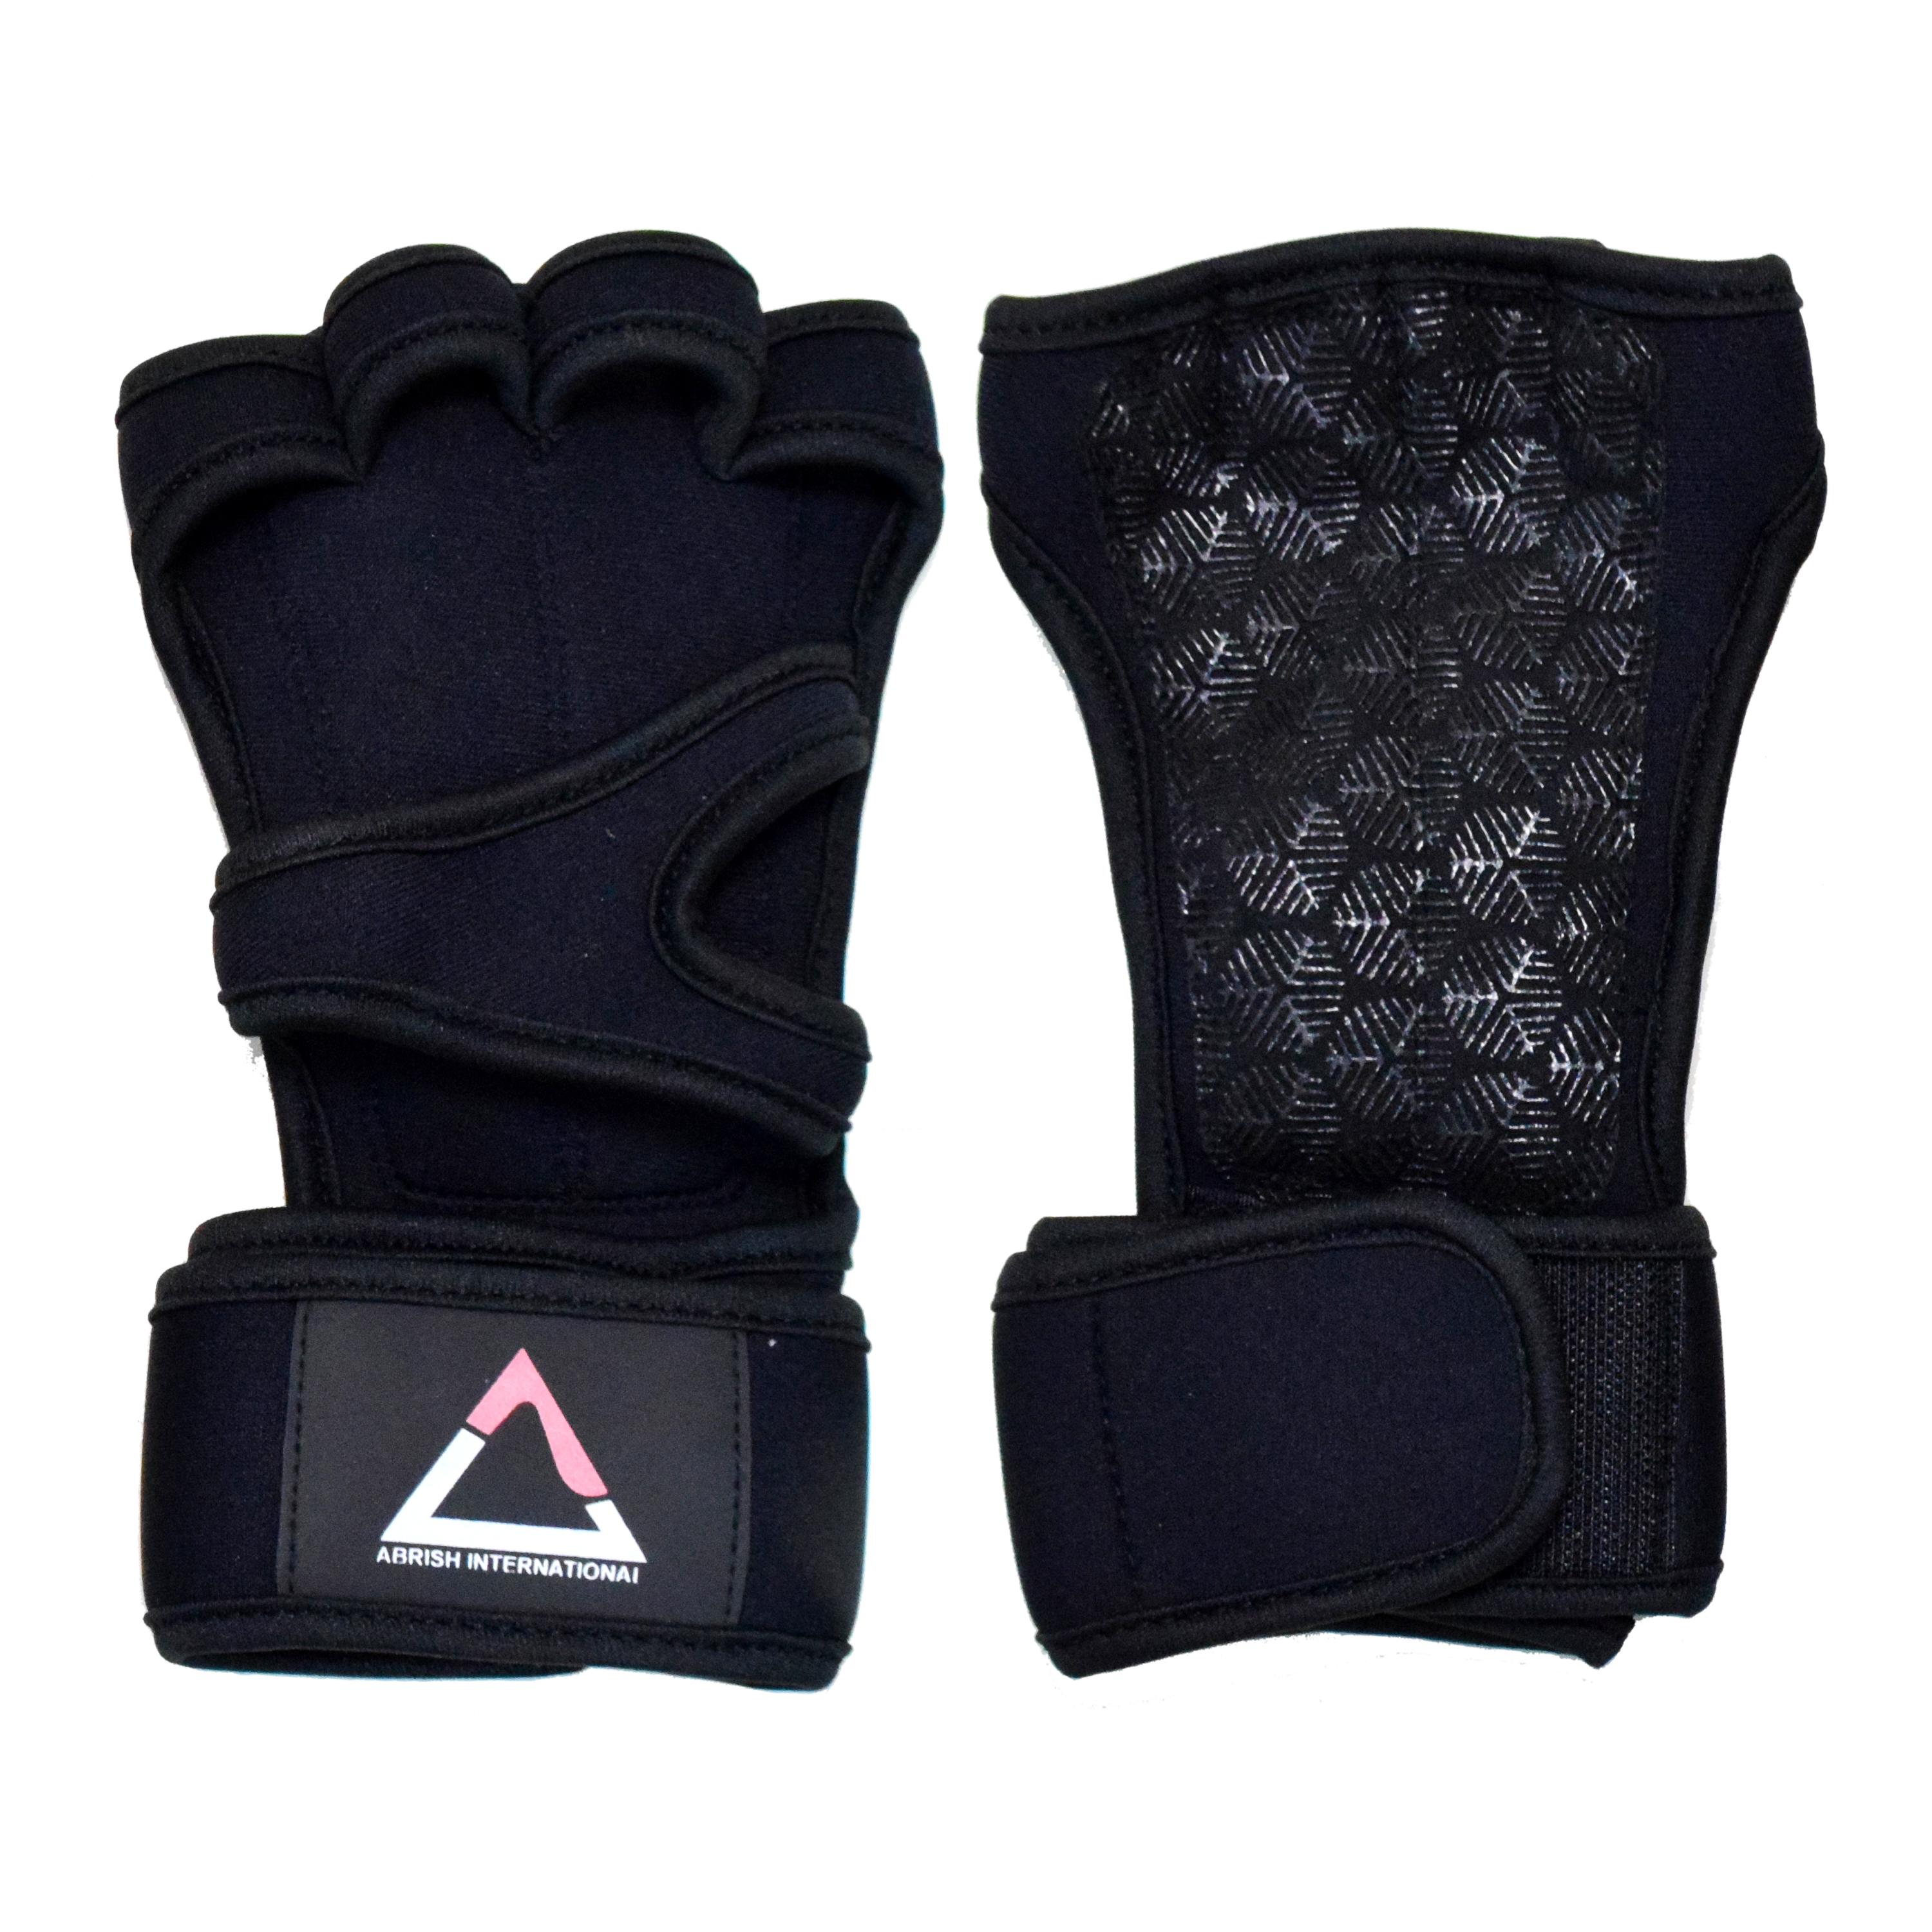 Black Half Finger Gloves for Wrist Support